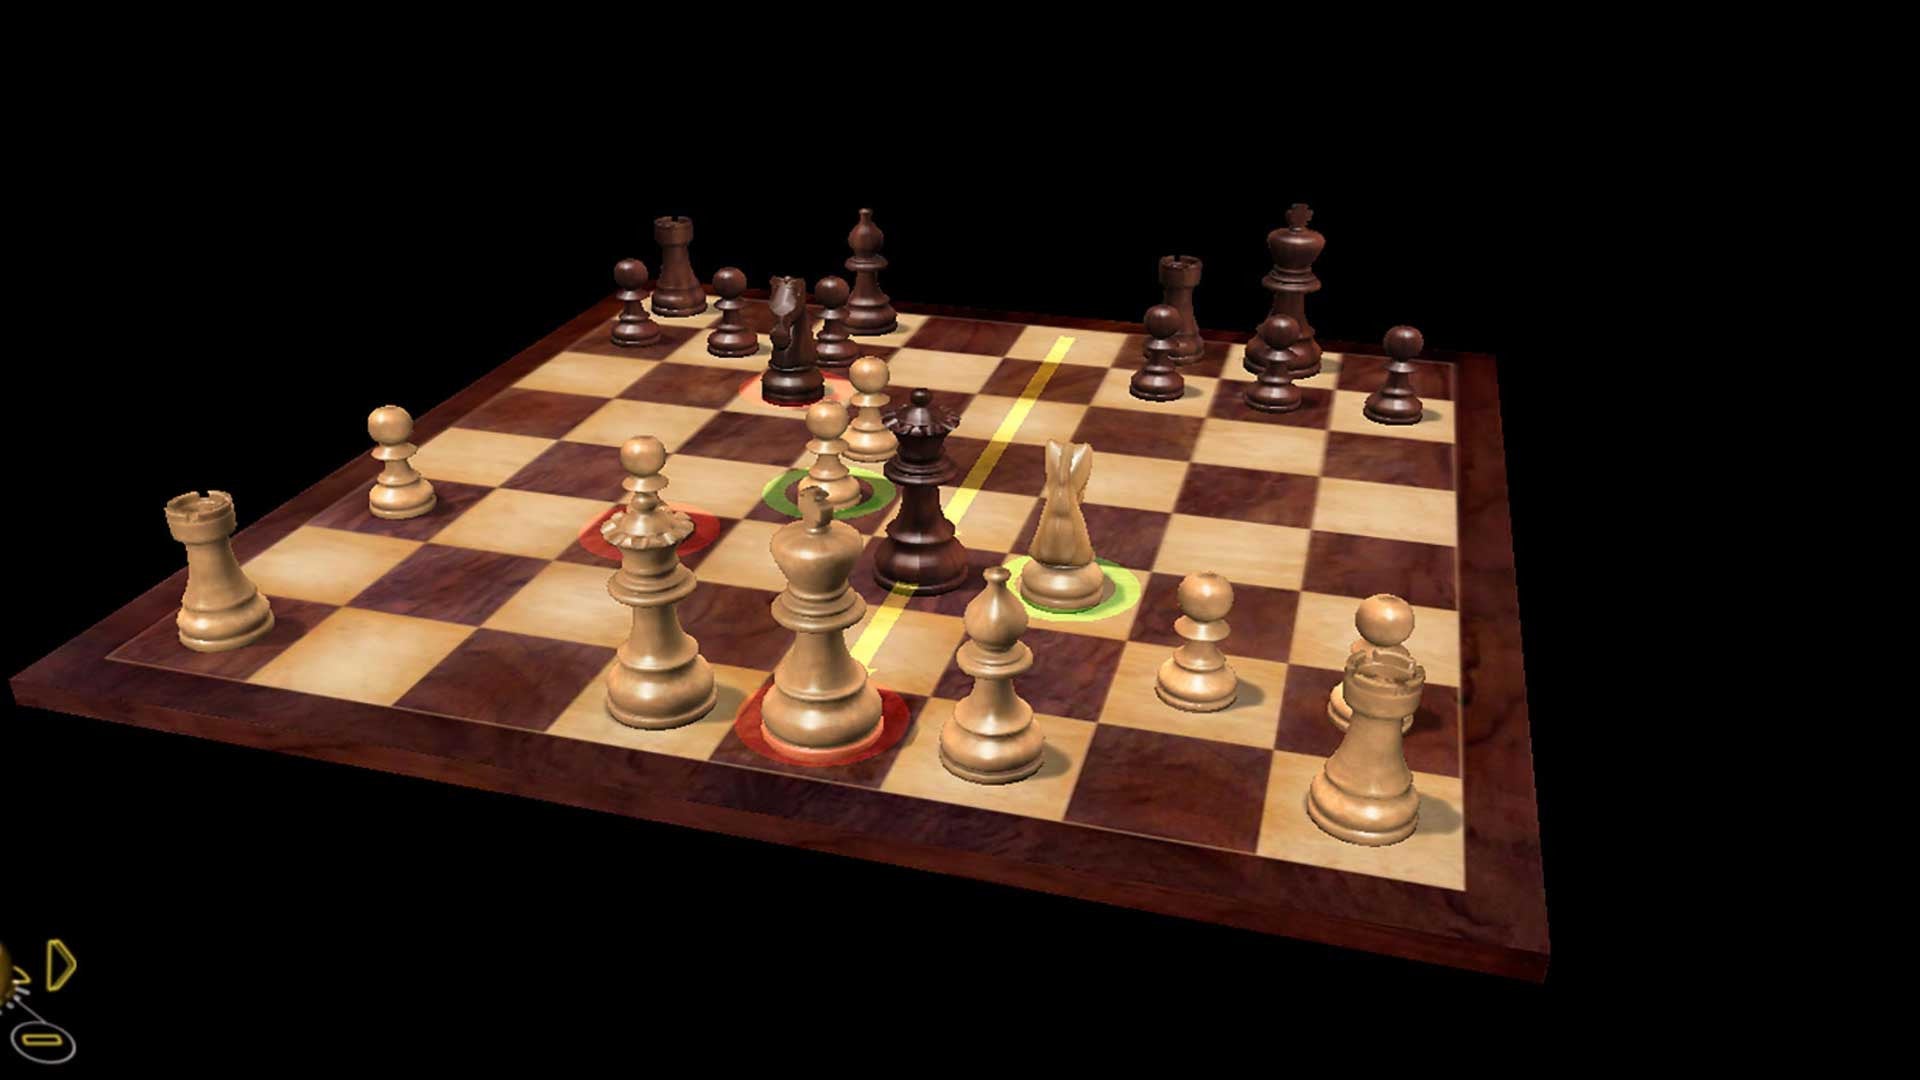 Fritz Chess 14 - Metacritic